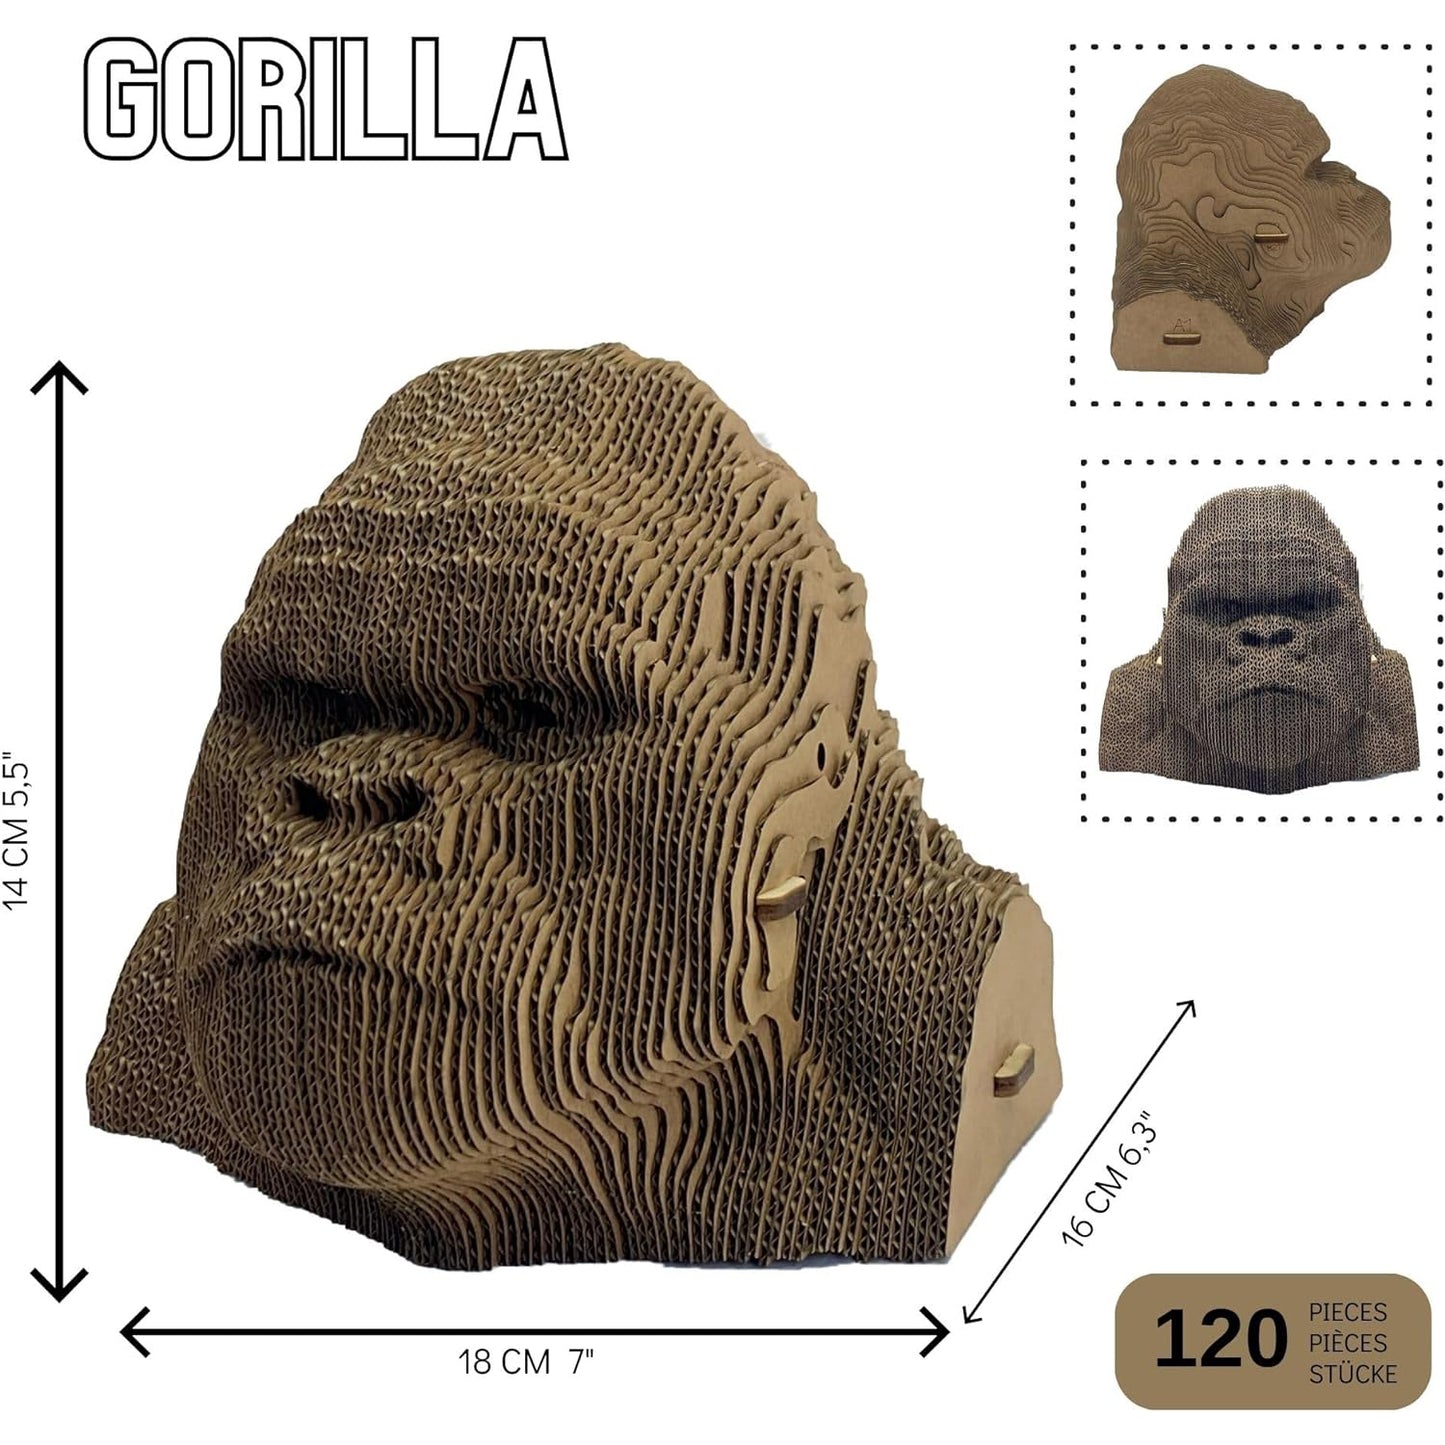 Cabeza de puzzle 3D de cartón ondulado - Gorila